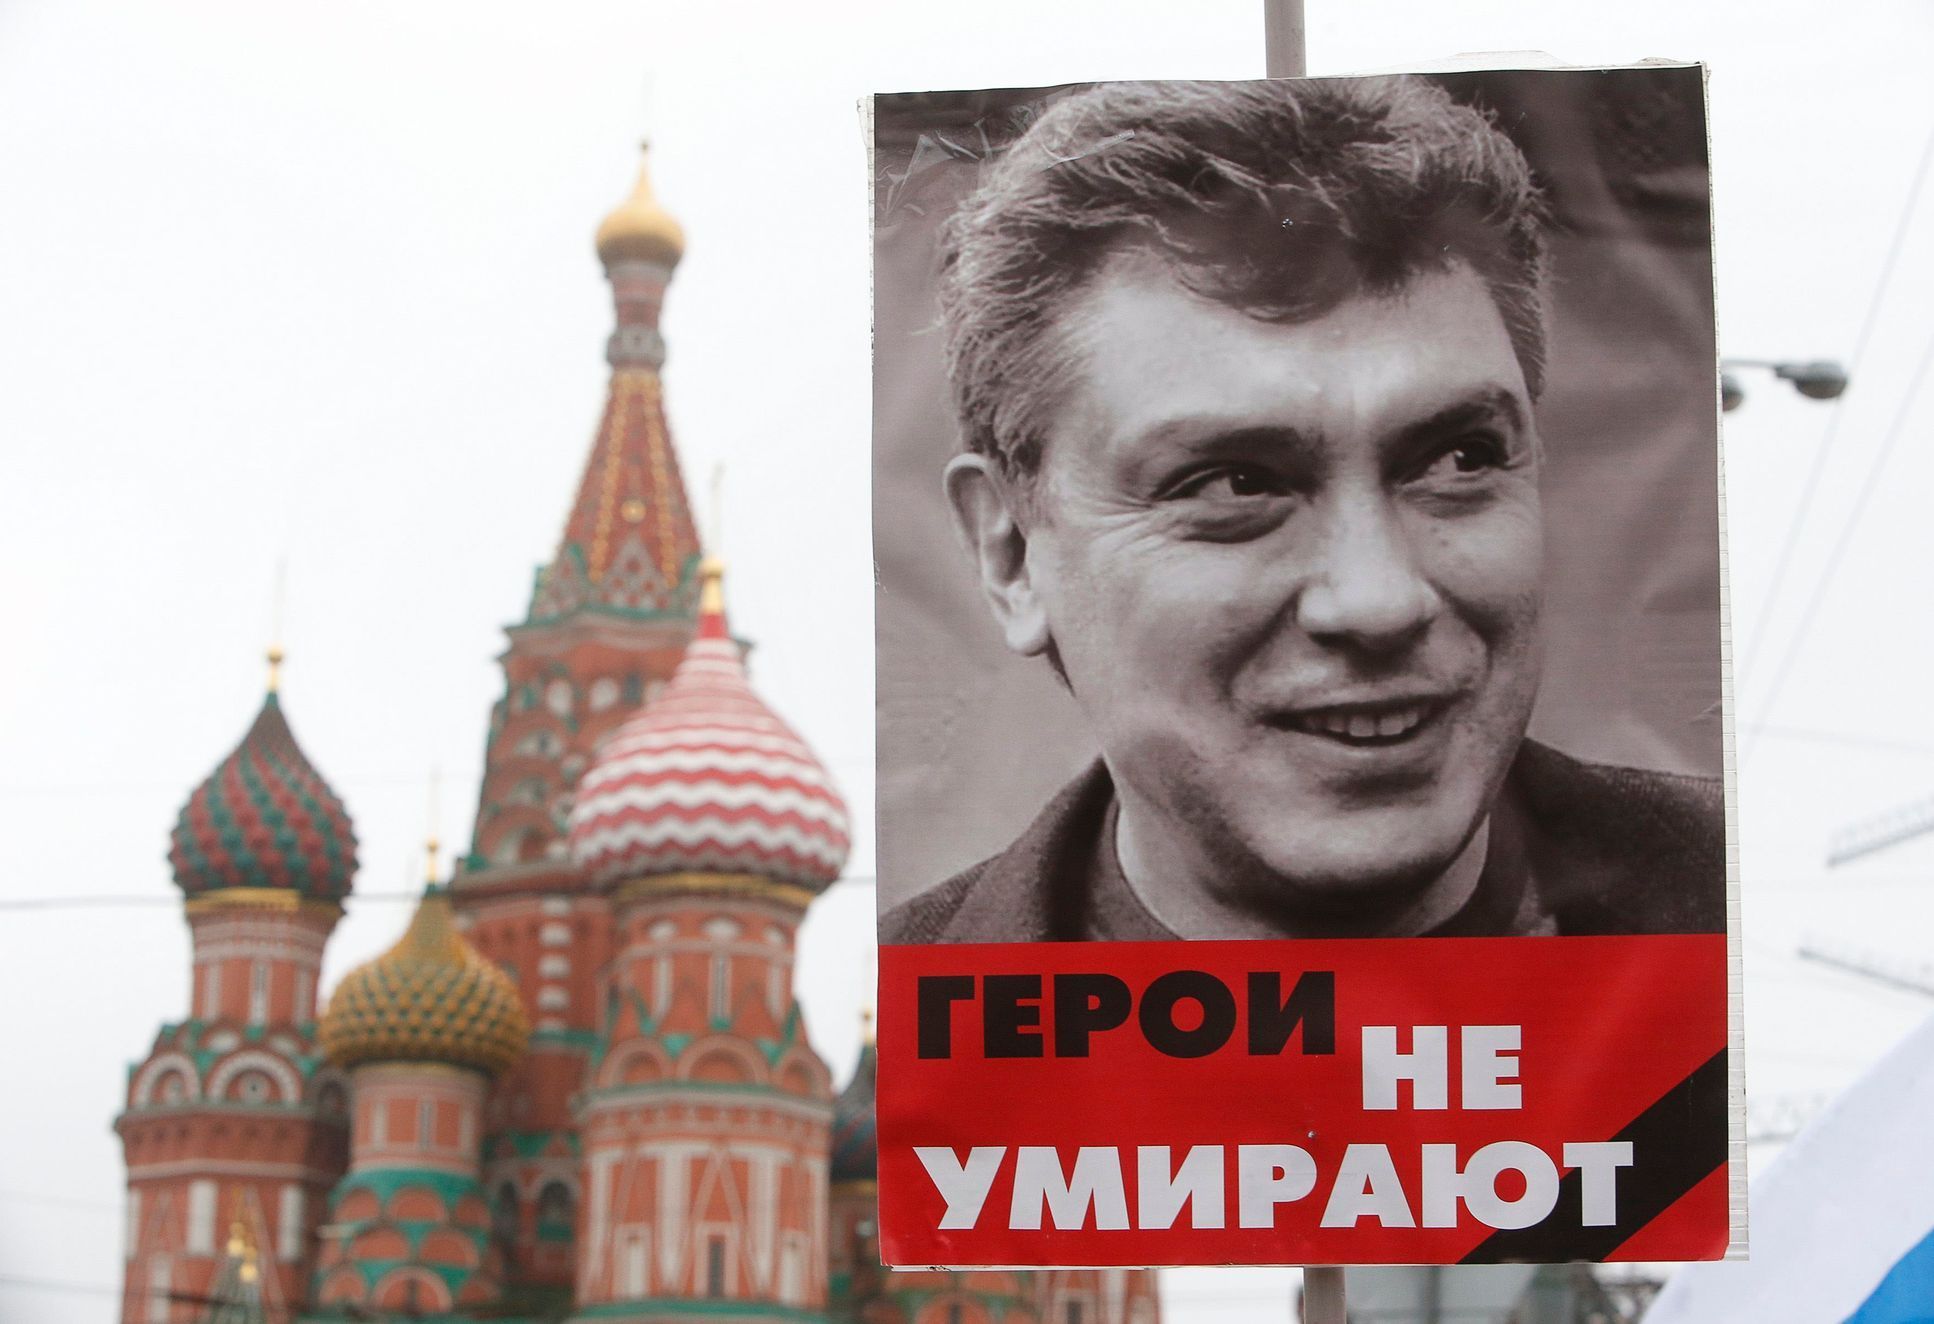 Pochod v Moskvě. "Hrdinové neumírají"